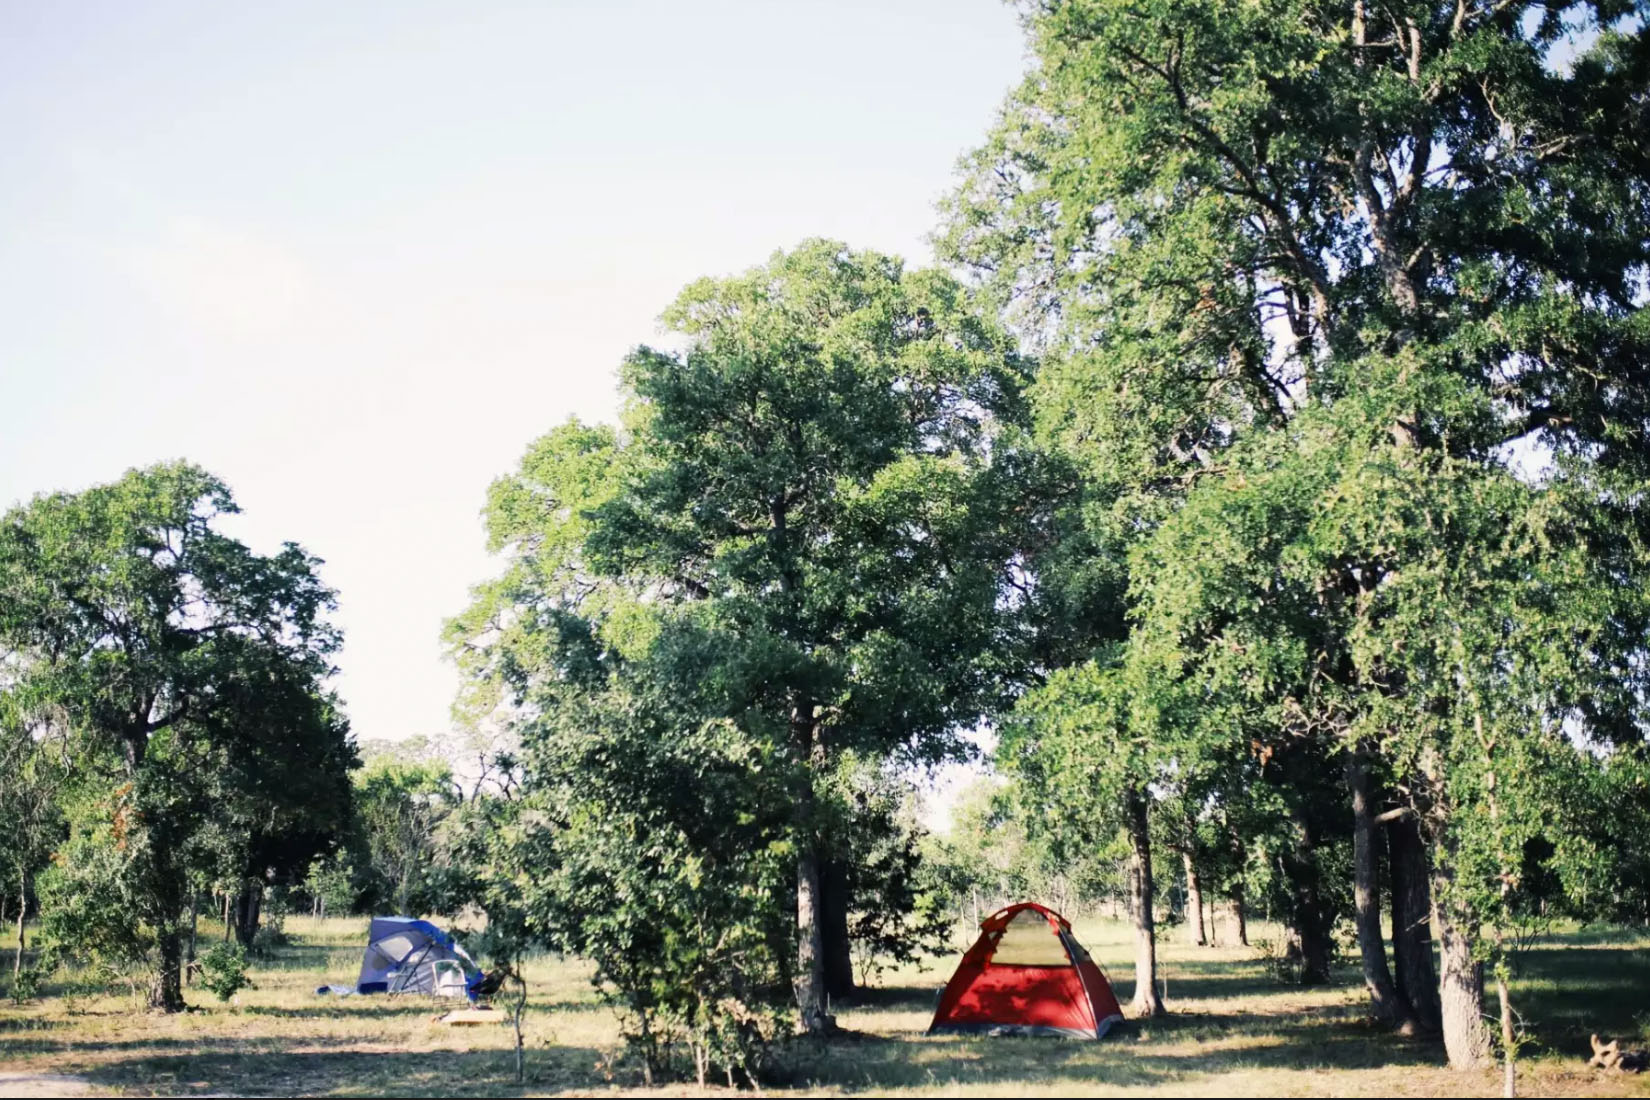 Al's Hideaway ofrece camping de bajo costo en Texas por $25's Hideaway offers low-cost camping in Texas for $25